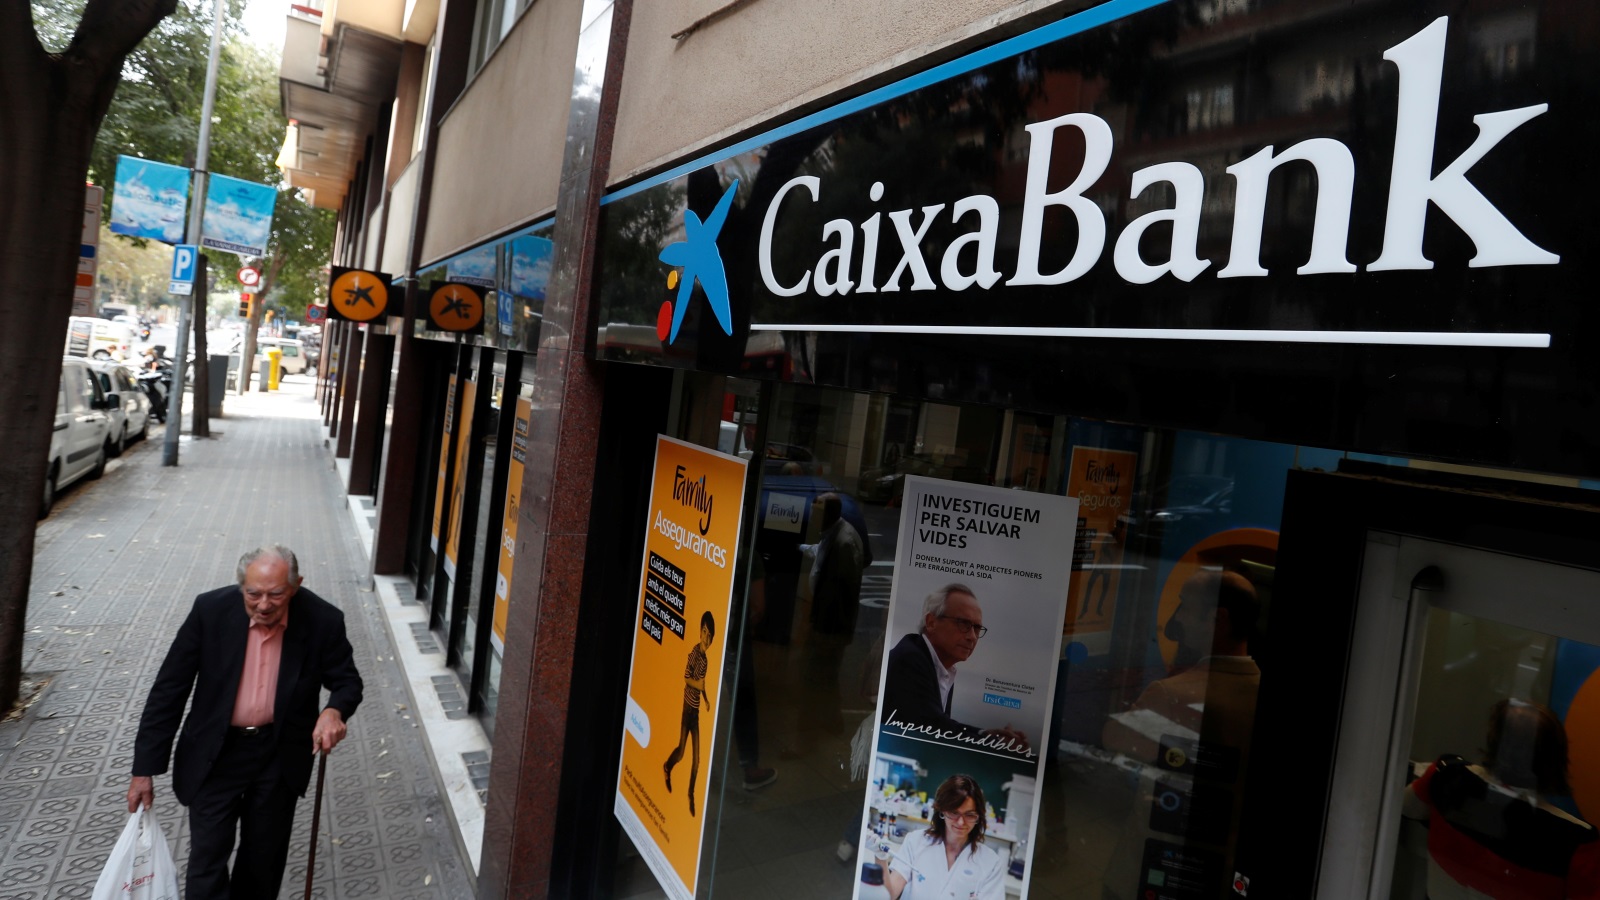 ‪كايشا بنك هو ثالث أكبر بنك إسباني قرر نقل مقره من برشلونة بكتالونيا إلى فالنسيا جنوبي البلاد‬ كايشا بنك هو ثالث أكبر بنك إسباني قرر نقل مقره من برشلونة بكتالونيا إلى فالنسيا جنوبي البلاد (رويترز)